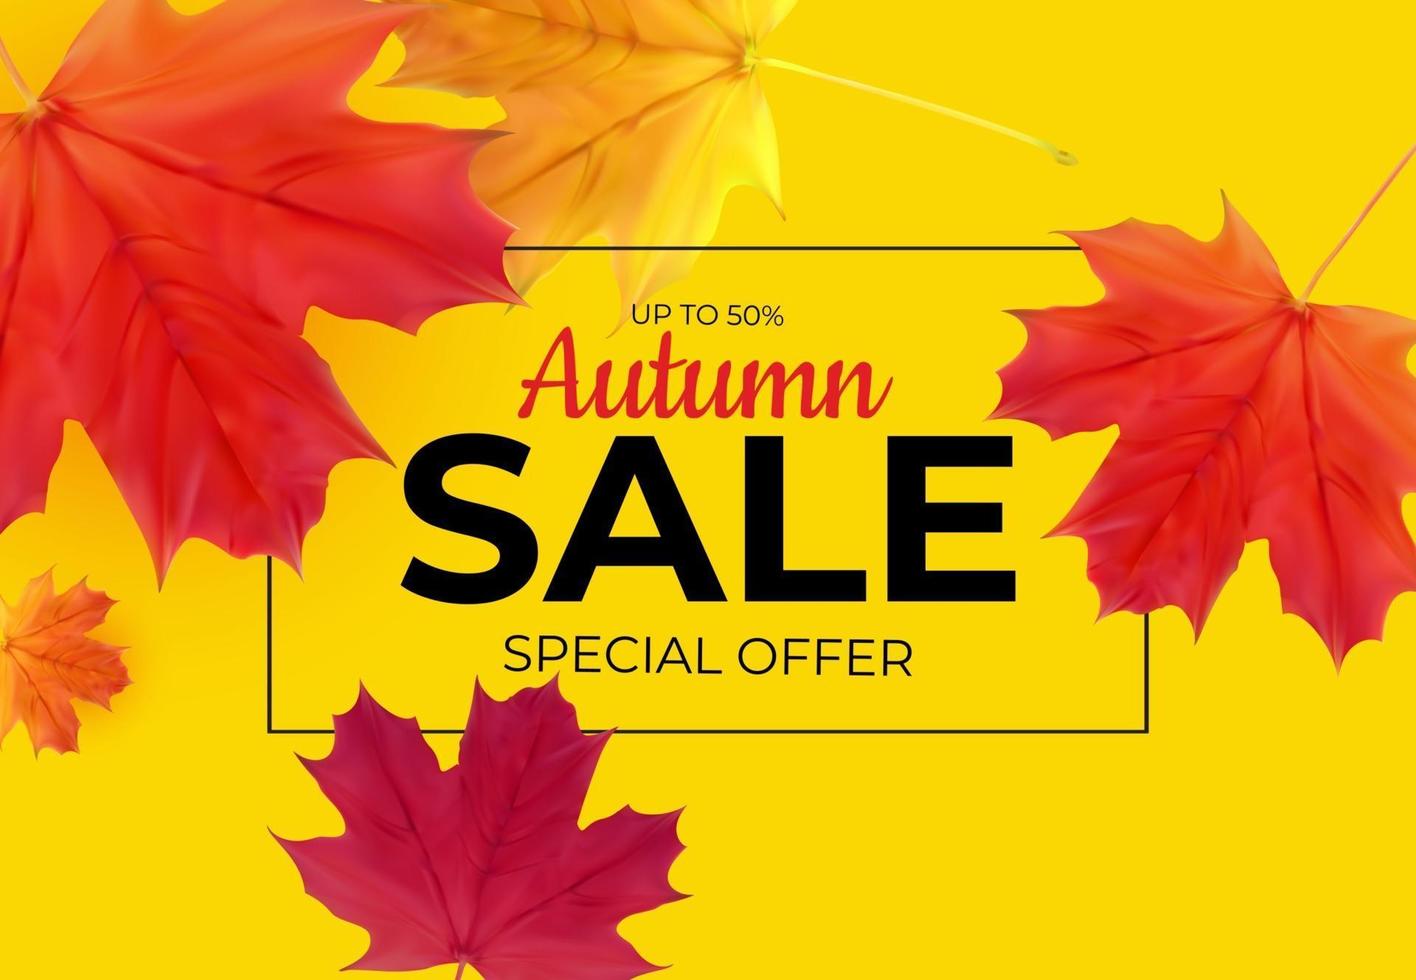 banner de venta de hojas de otoño brillante tarjeta de descuento comercial vector